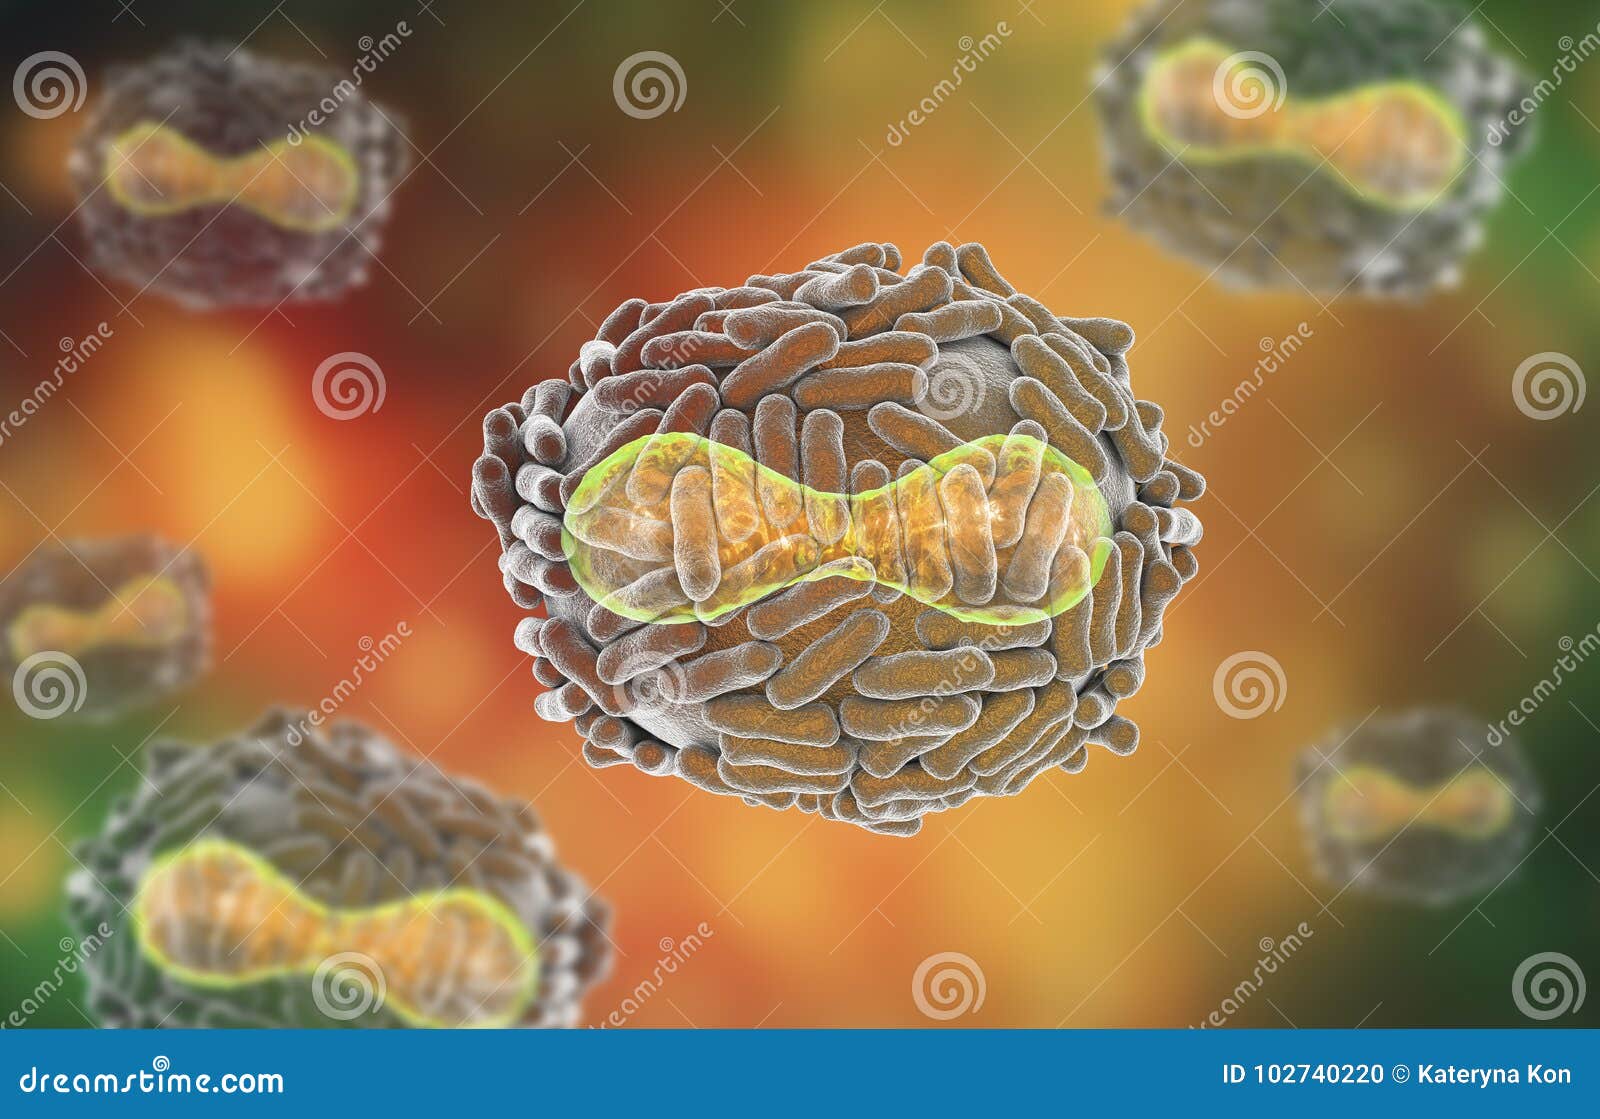 variola virus 